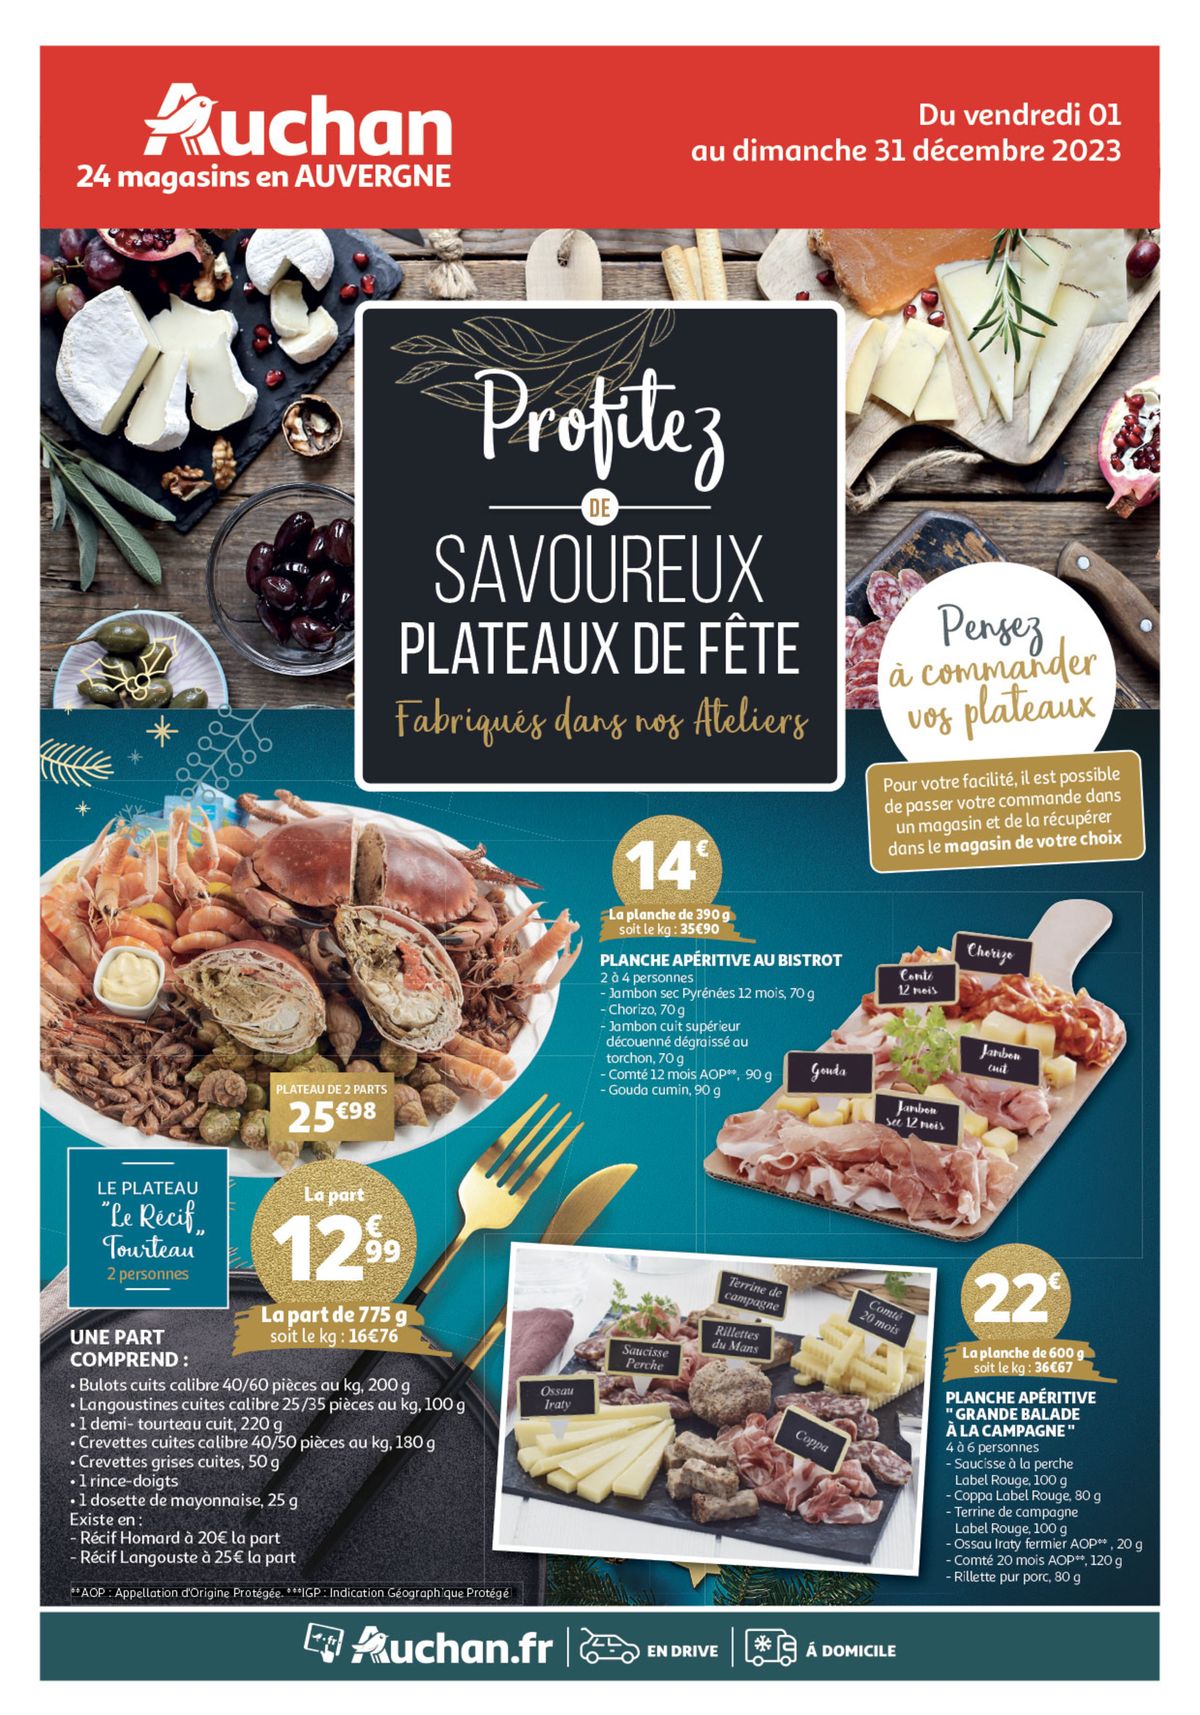 Catalogue Plateaux de Fête, page 00001